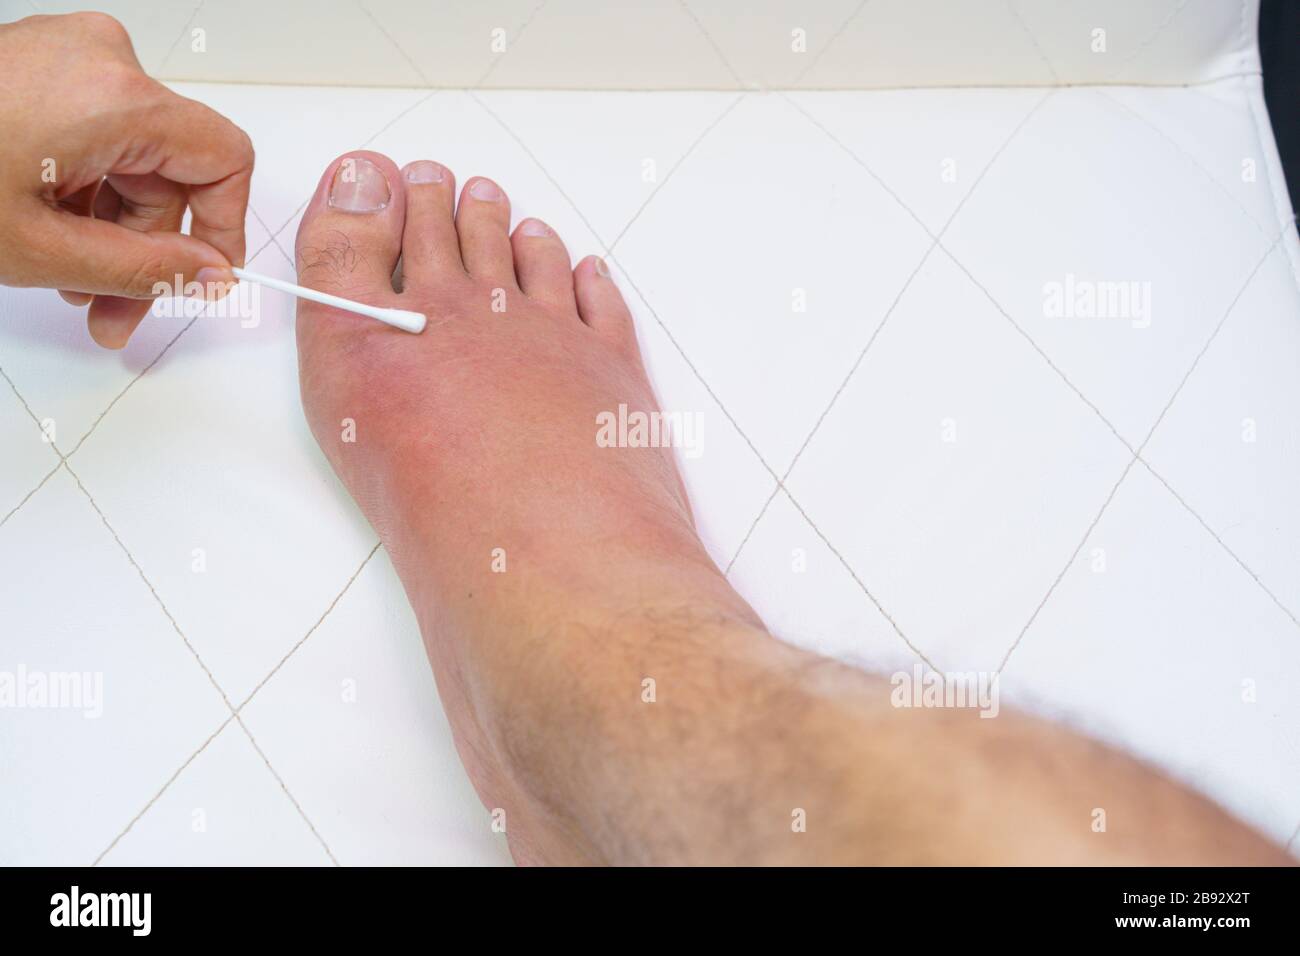 Primo piano vecchio piede destro, caviglia ferito in attesa e gonfiore malattia infettiva da apicoltura reazioni allergiche trattamento infermieristico sulla medicazione a ferita Foto Stock